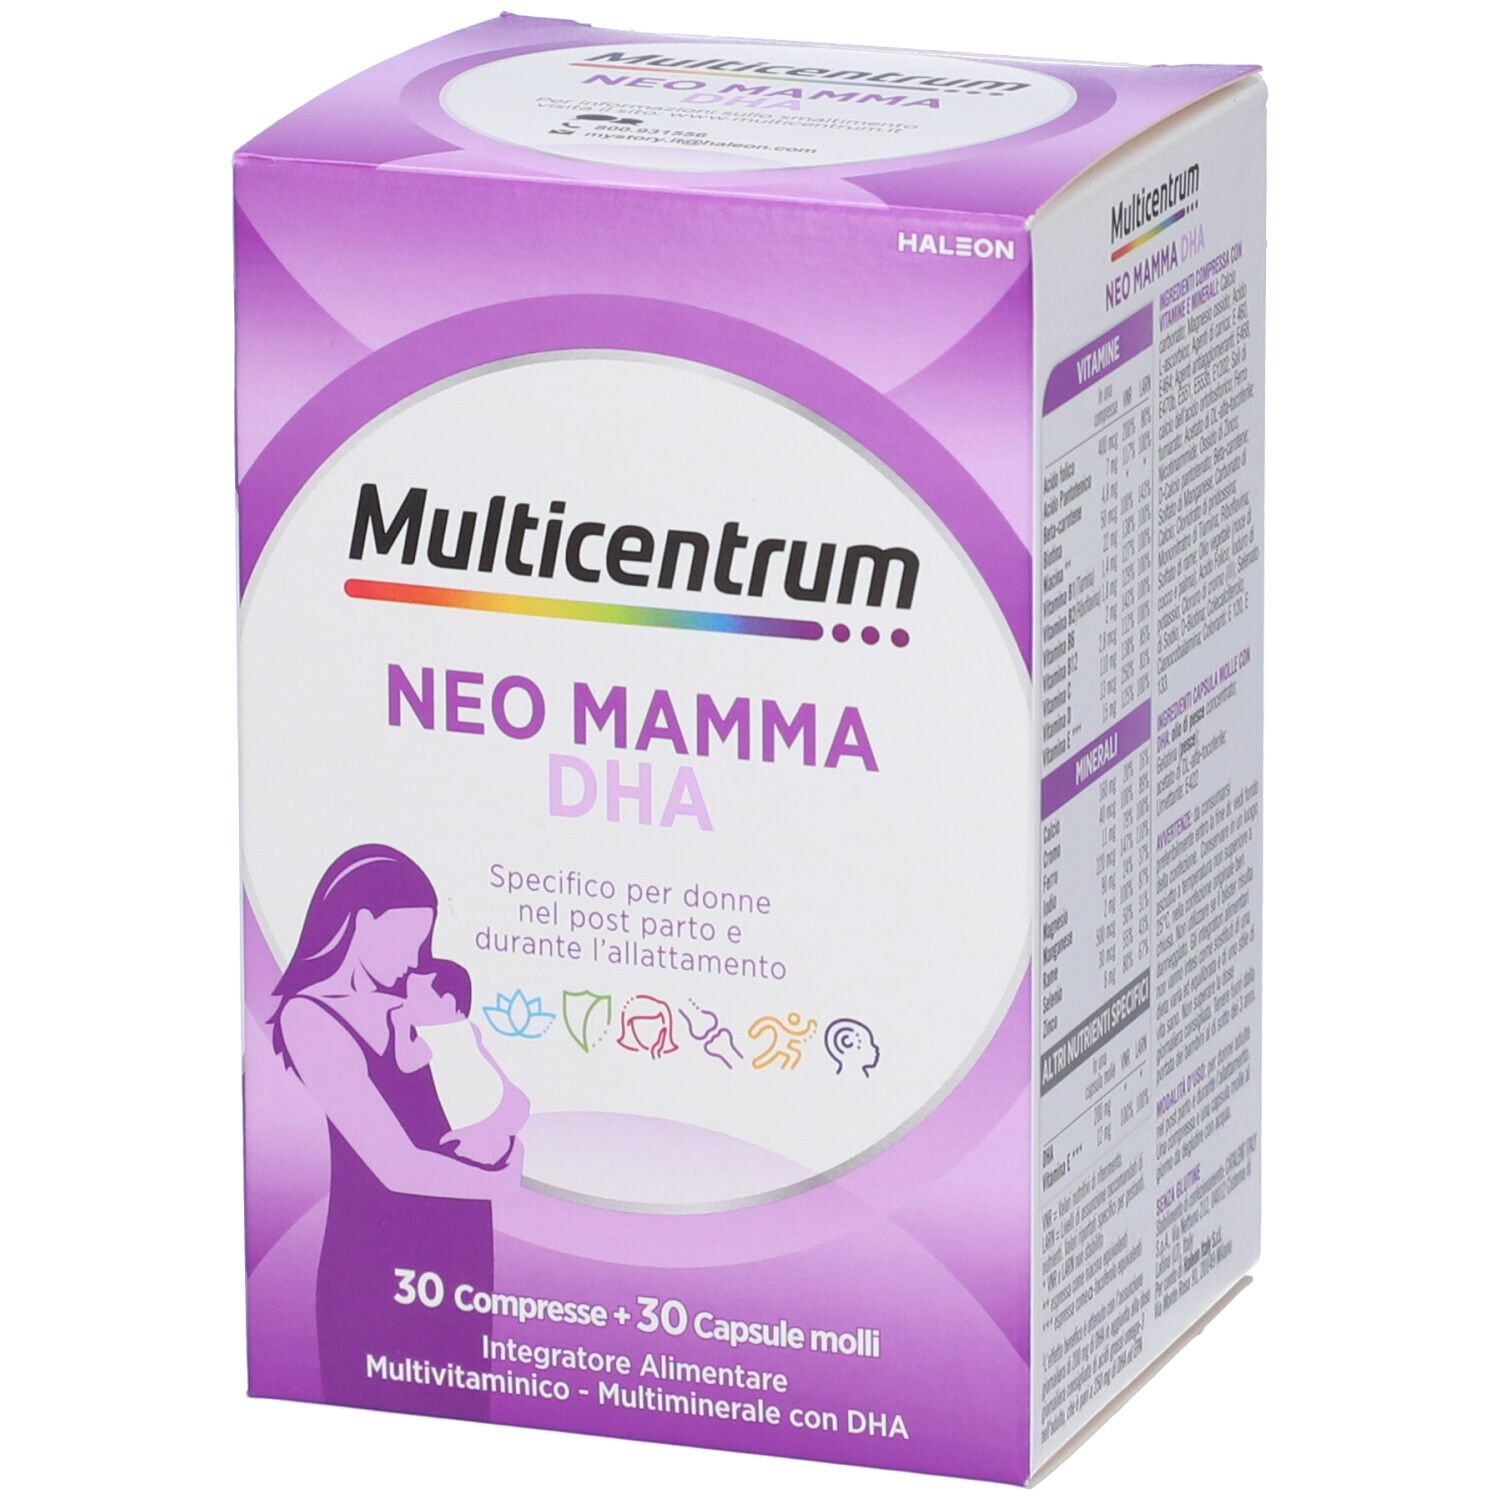 Multicentrum Neo Mamma DHA Petrone Online